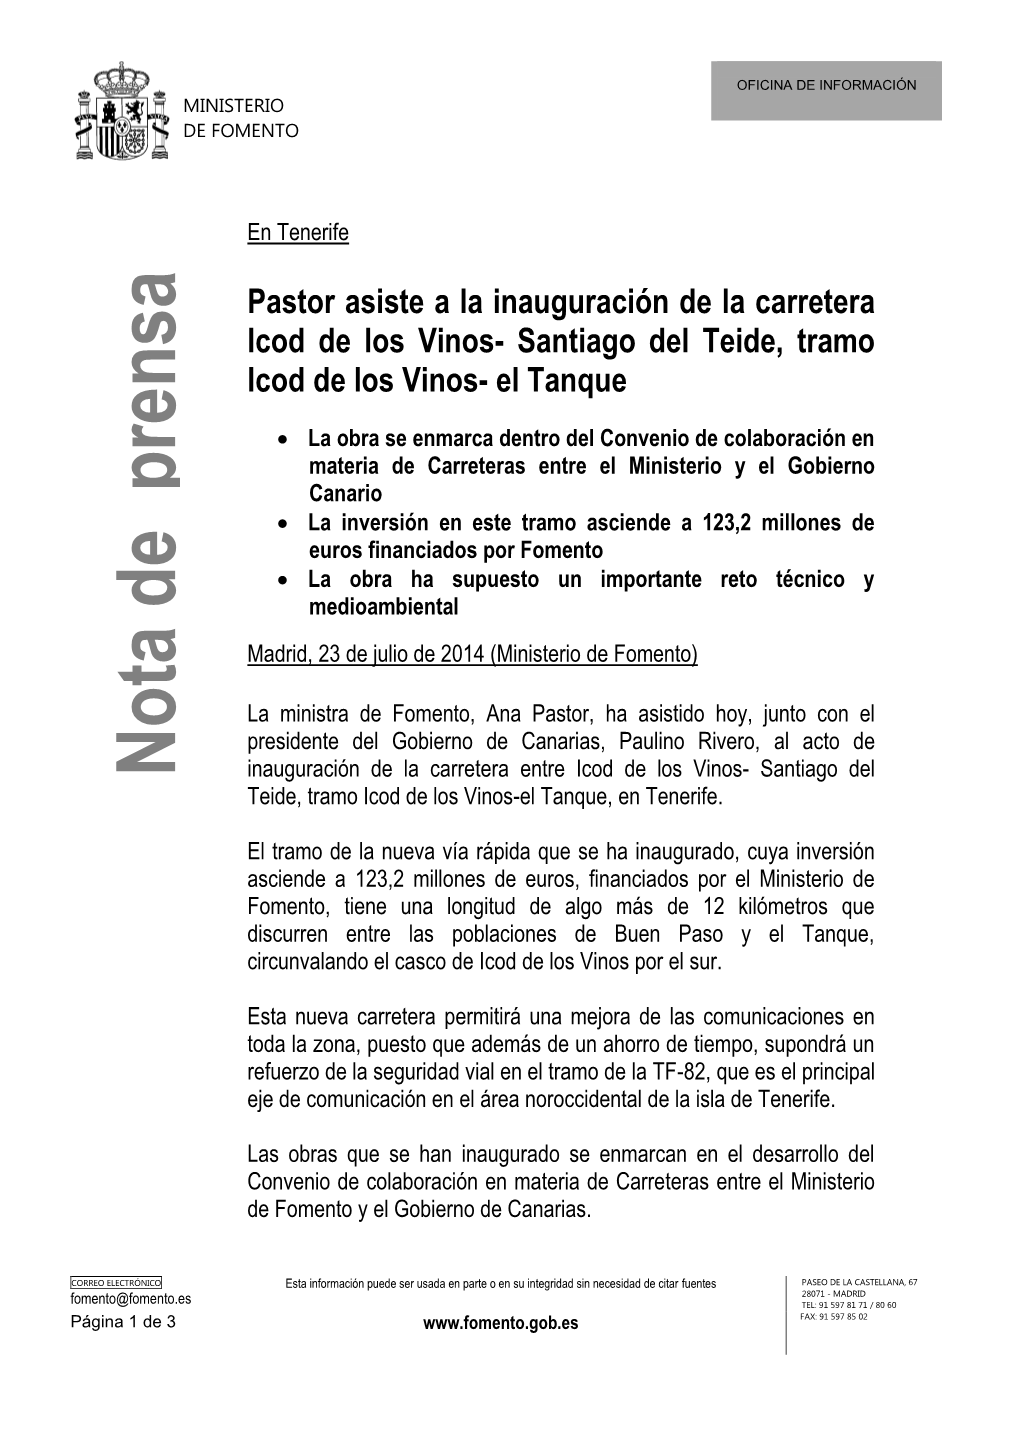 Pastor Asiste a La Inauguración De La Carretera Icod De Los Vinos- Santiago Del Teide, Tramo Icod De Los Vinos- El Tanque